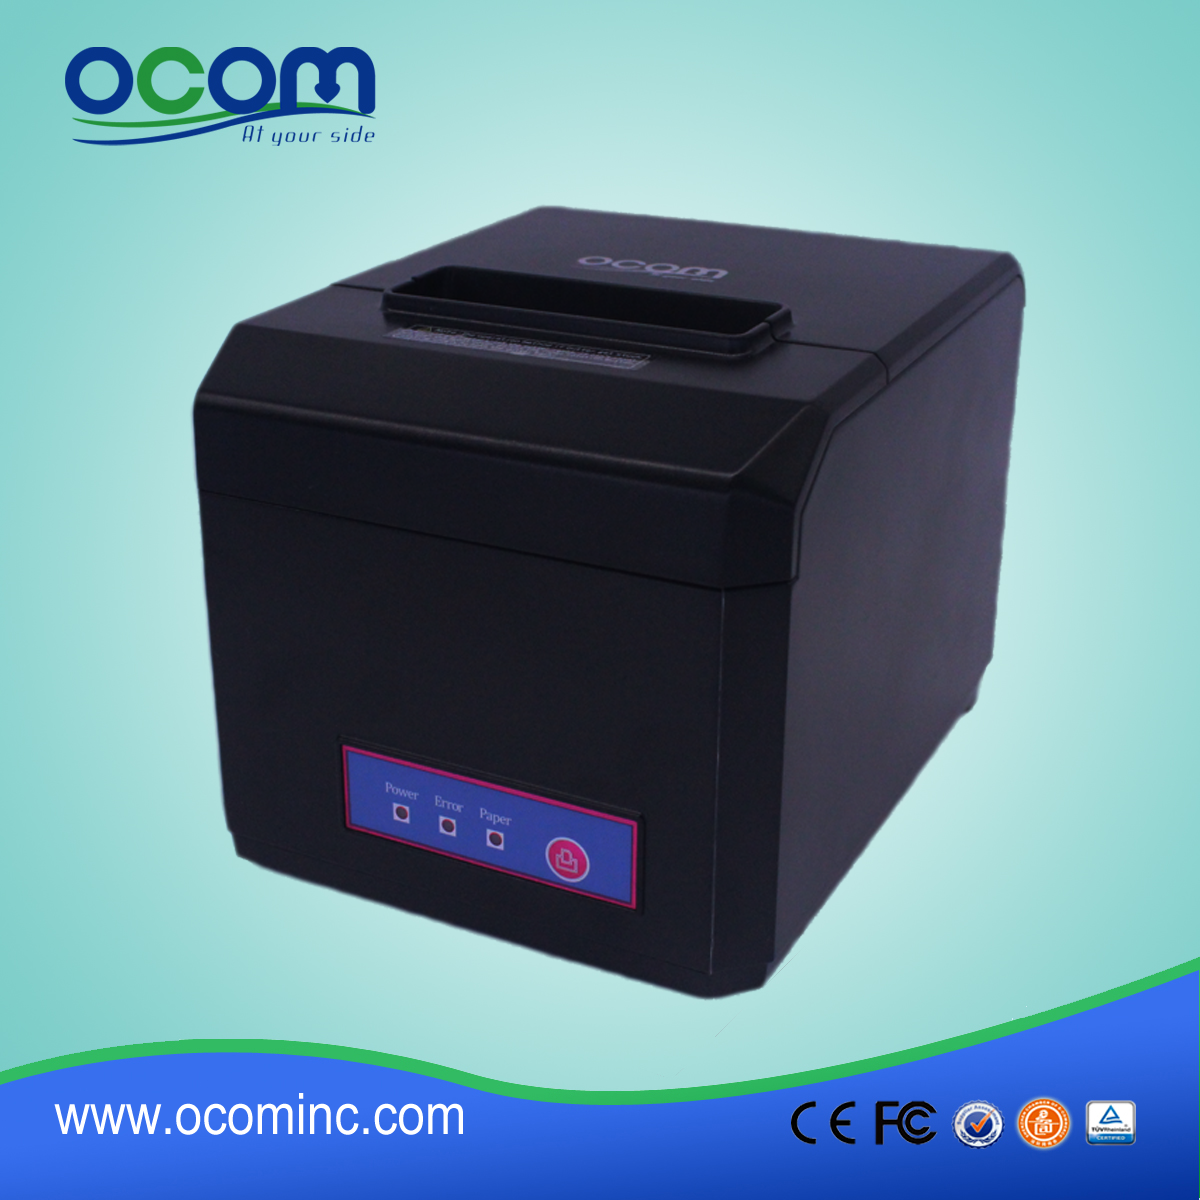 OCPP-80F Impressora Térmica e Receitas de Corte WIFI e Bluetooth Impressora